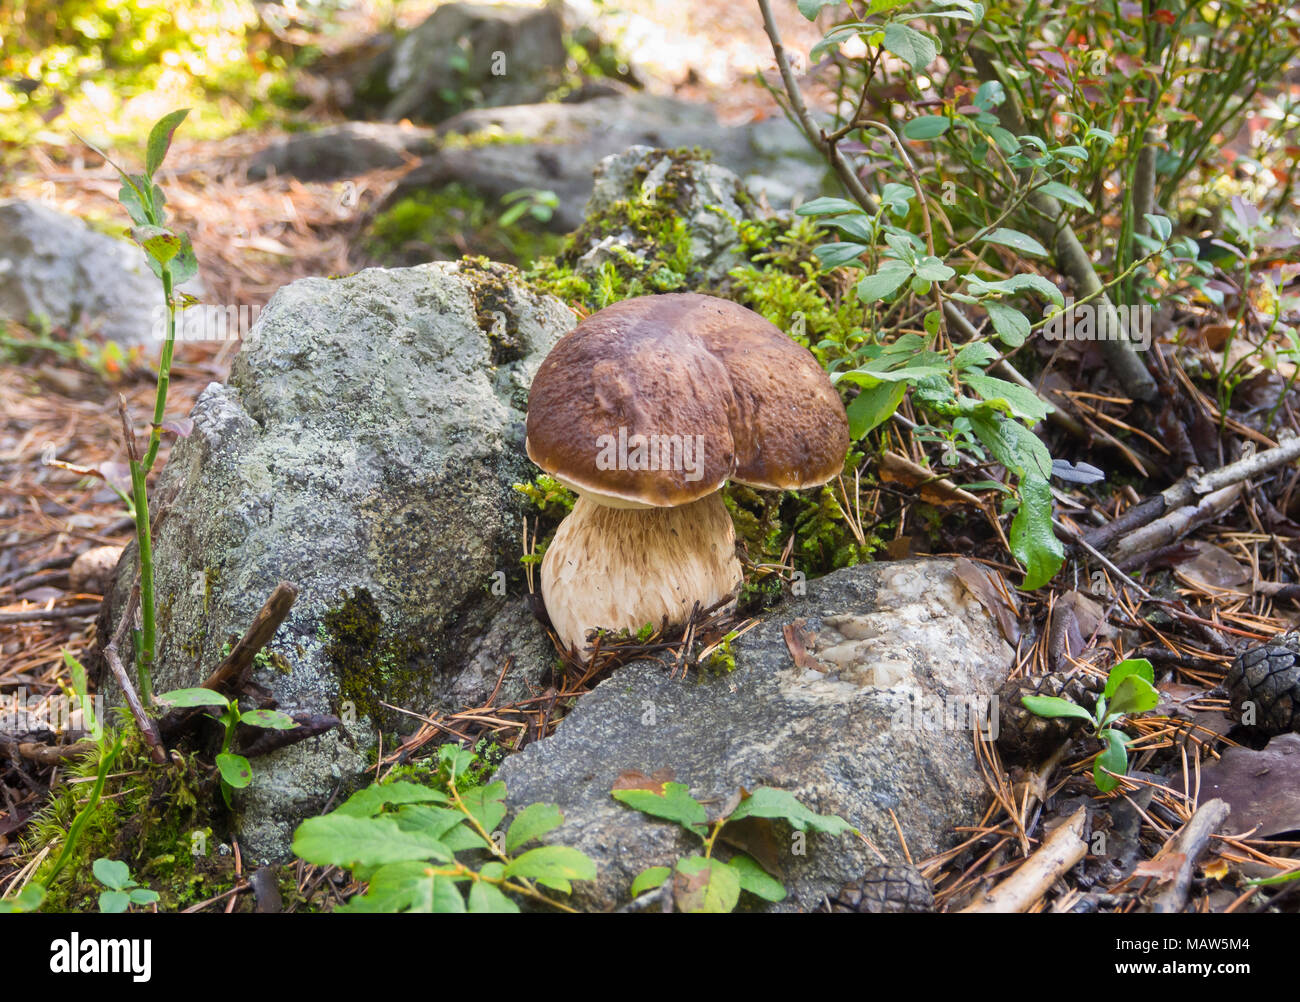 Boletus edulis,funghi porcini o penny bun per molti la scelta preferita alla ricerca di funghi nella foresta, qui in Ostmarka Oslo Norvegia Foto Stock